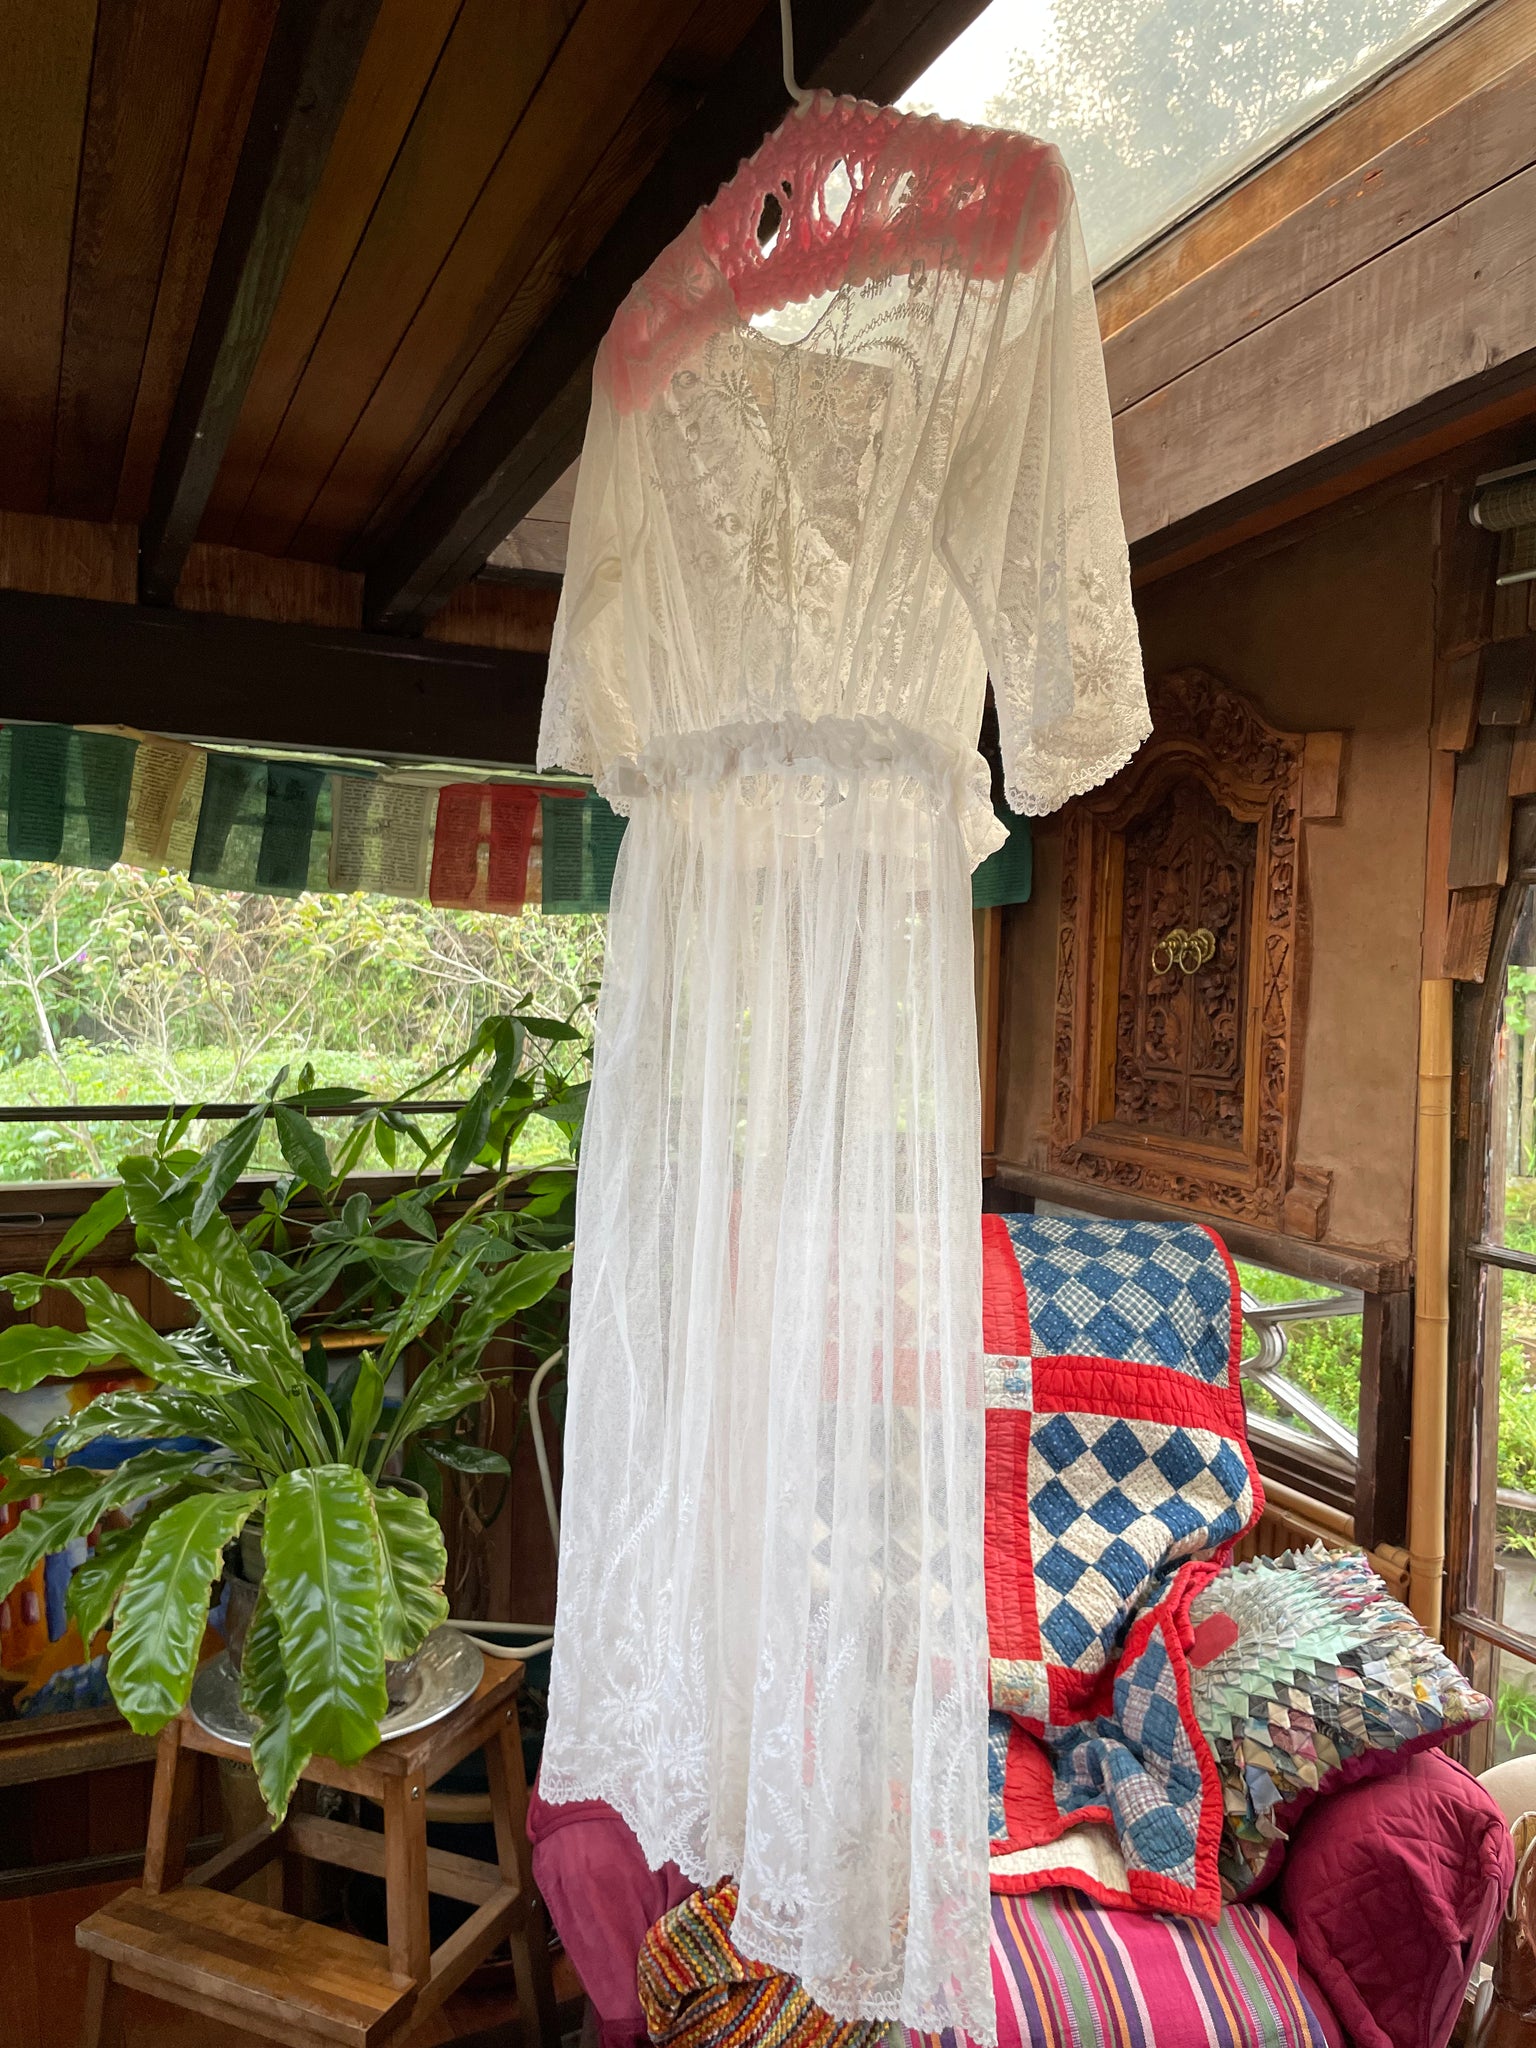 1917 Edwardian Embroidered Net Garden Dress